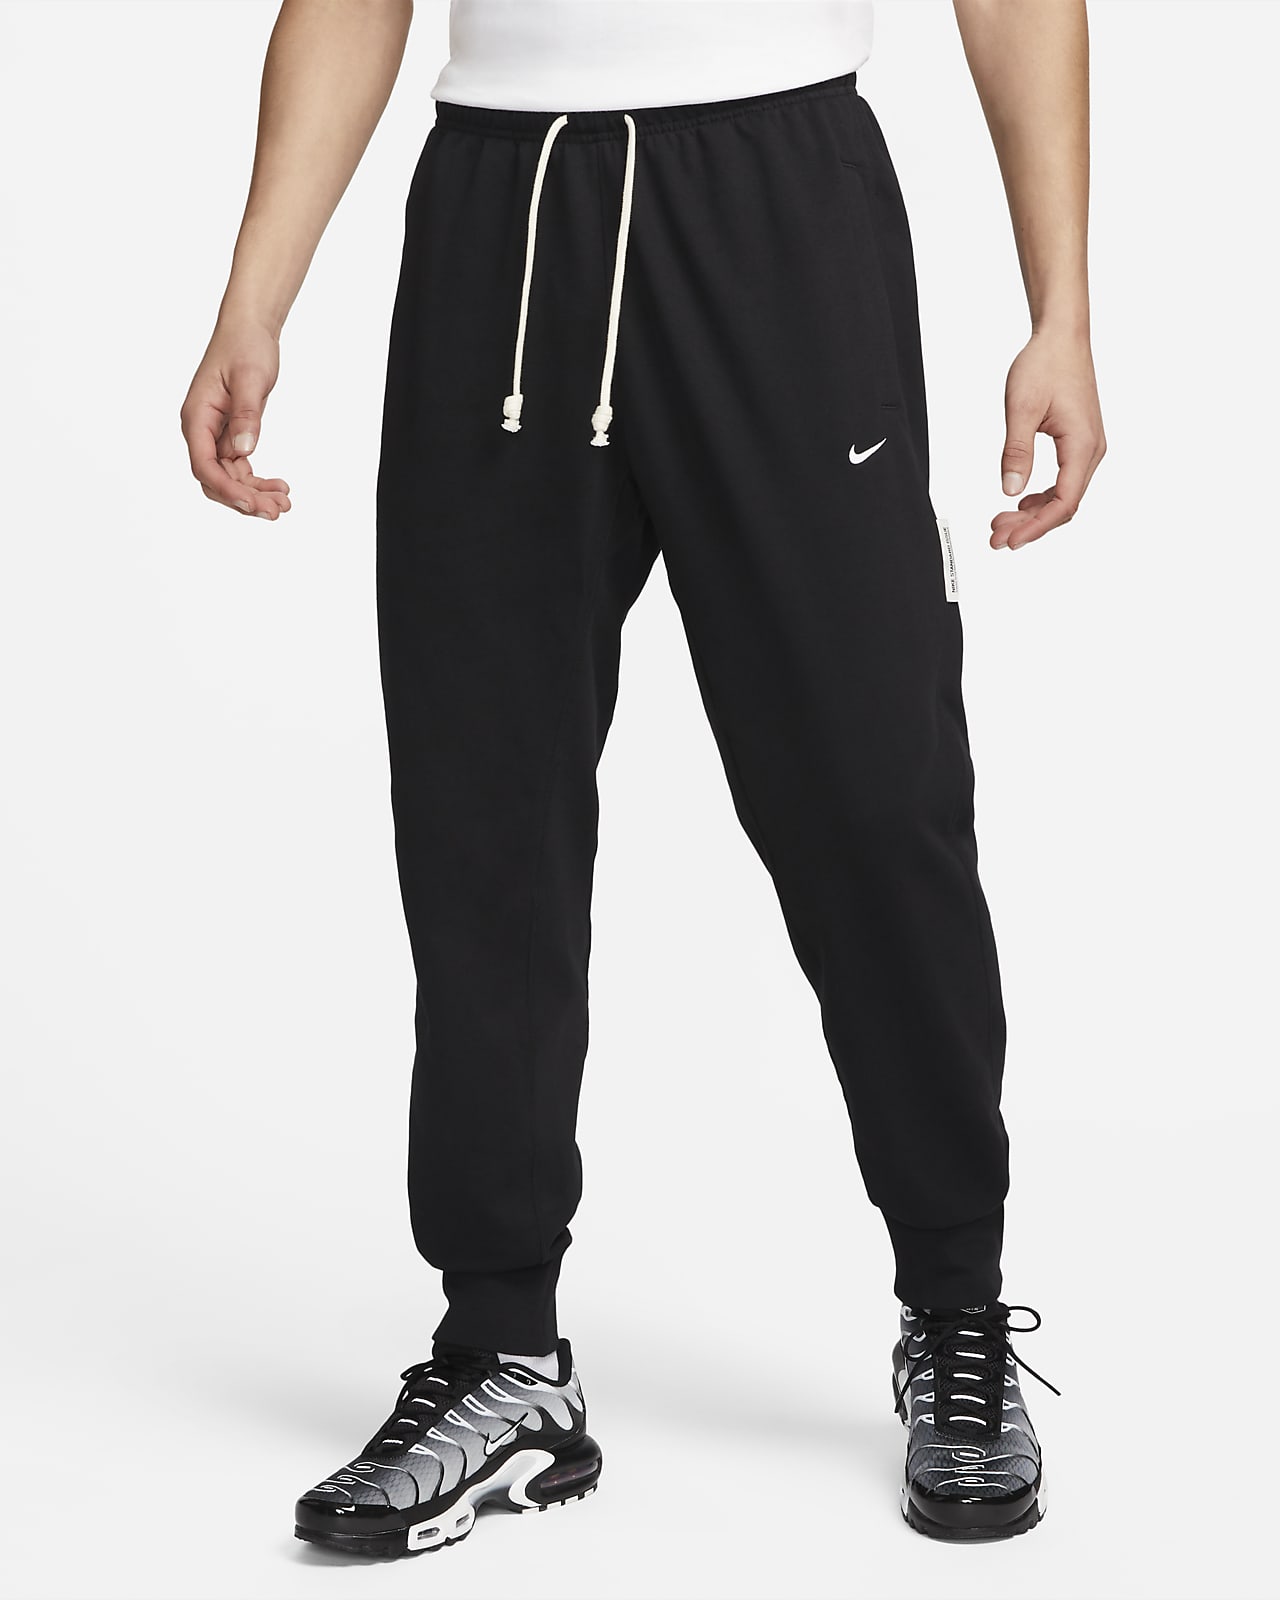 Pants de fútbol Dri-FIT para hombre Nike Standard Issue